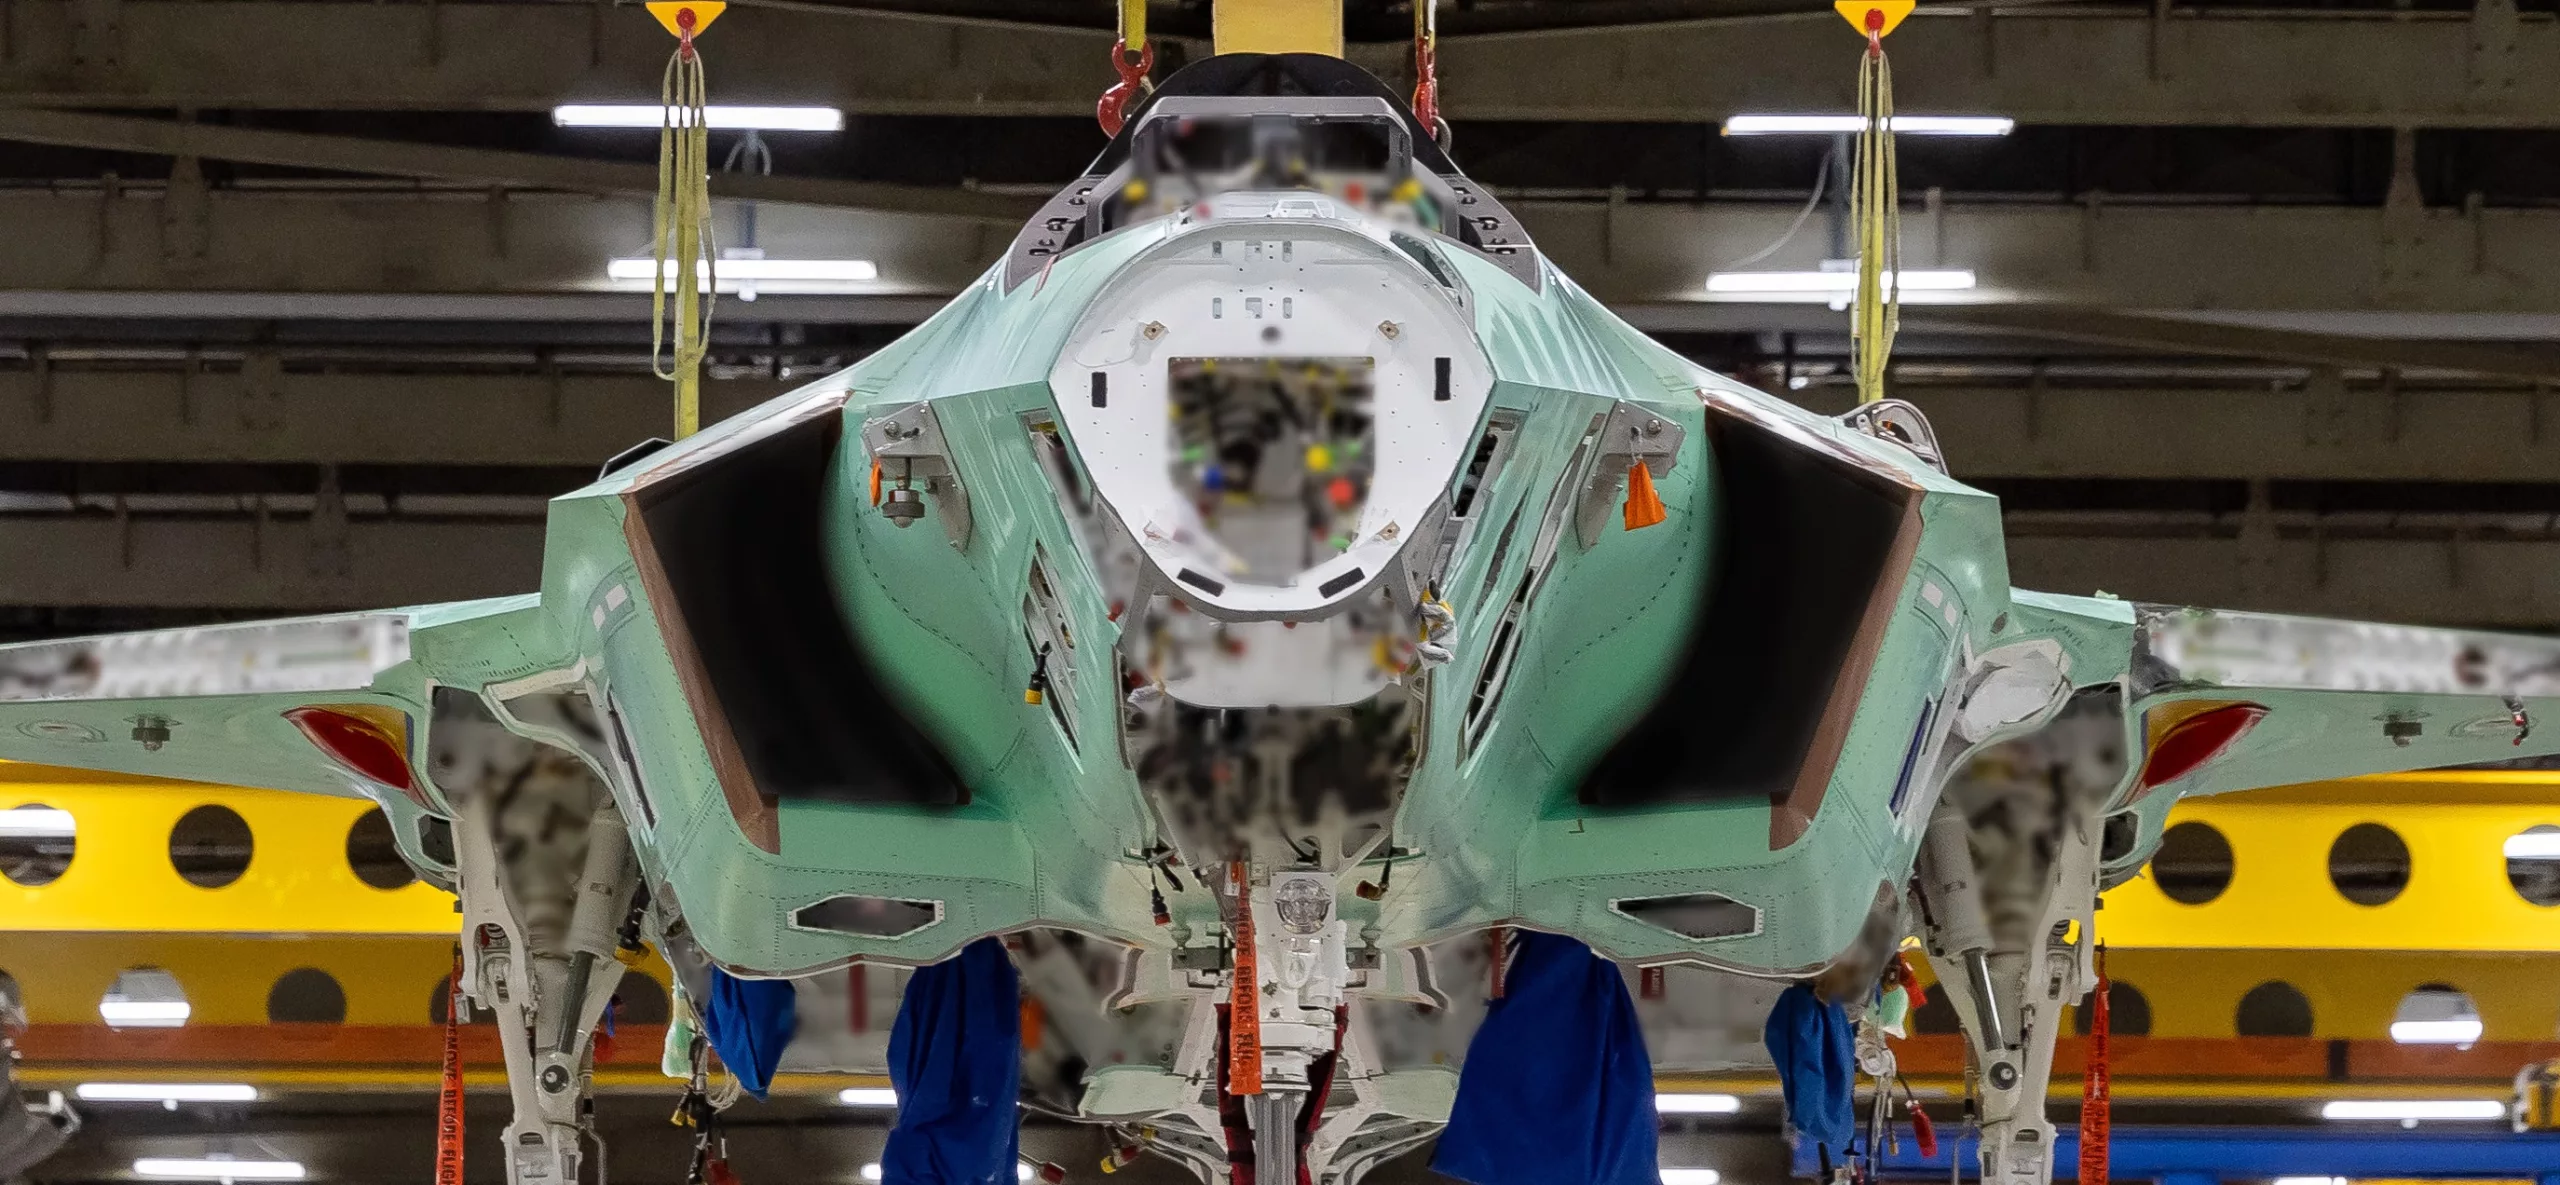 Achiziția avioanelor F-35 ar crea locuri de muncă și ar accelera dezvoltarea tehnologică pe 50 de ani